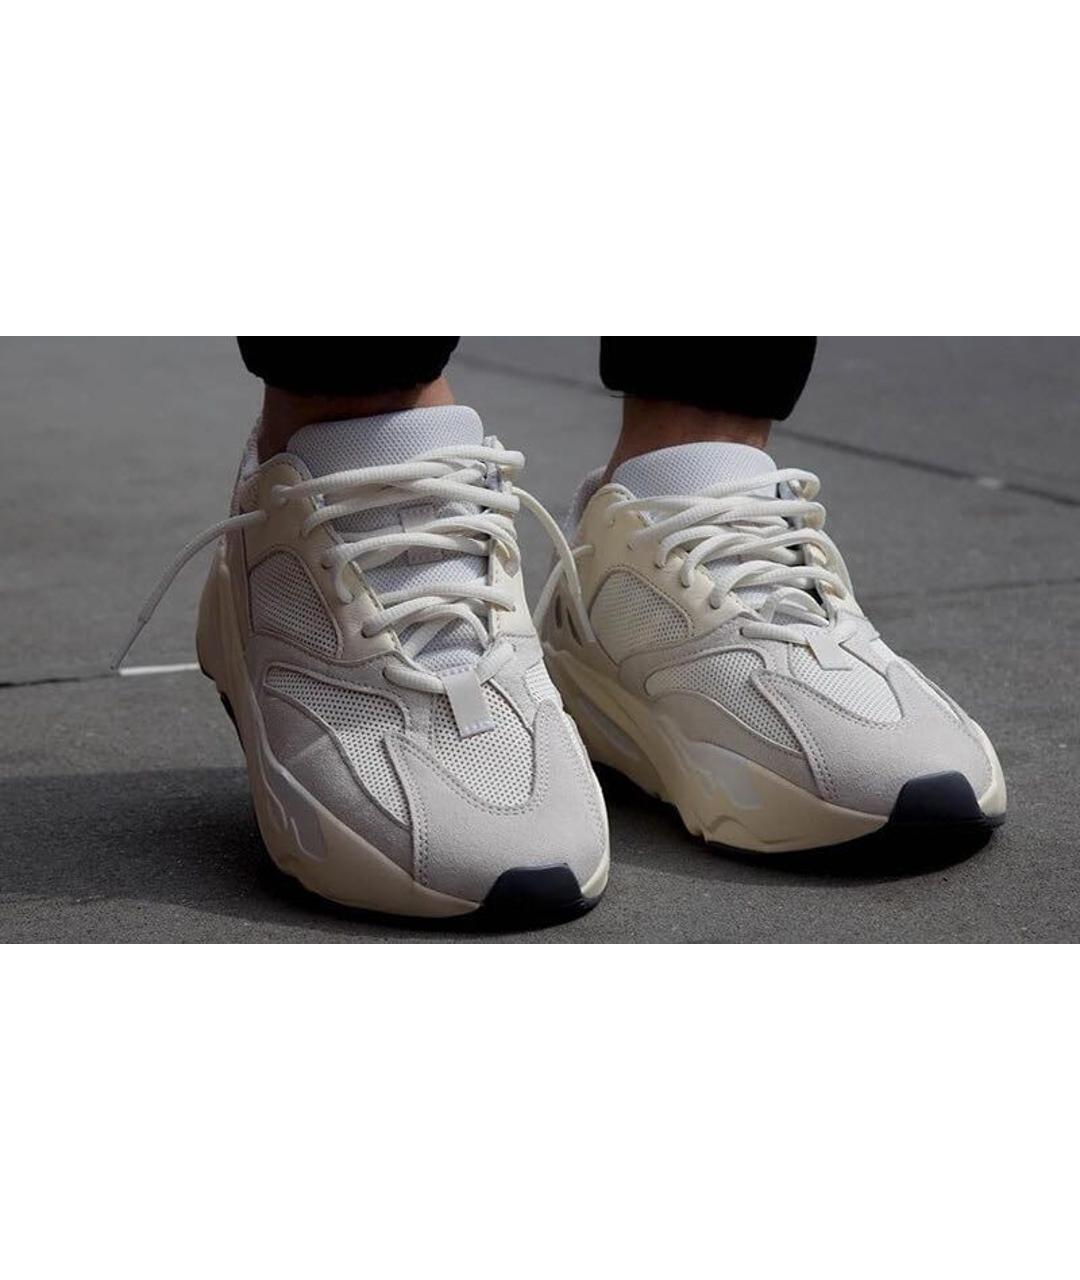 ADIDAS YEEZY Белые текстильные низкие кроссовки / кеды, фото 2